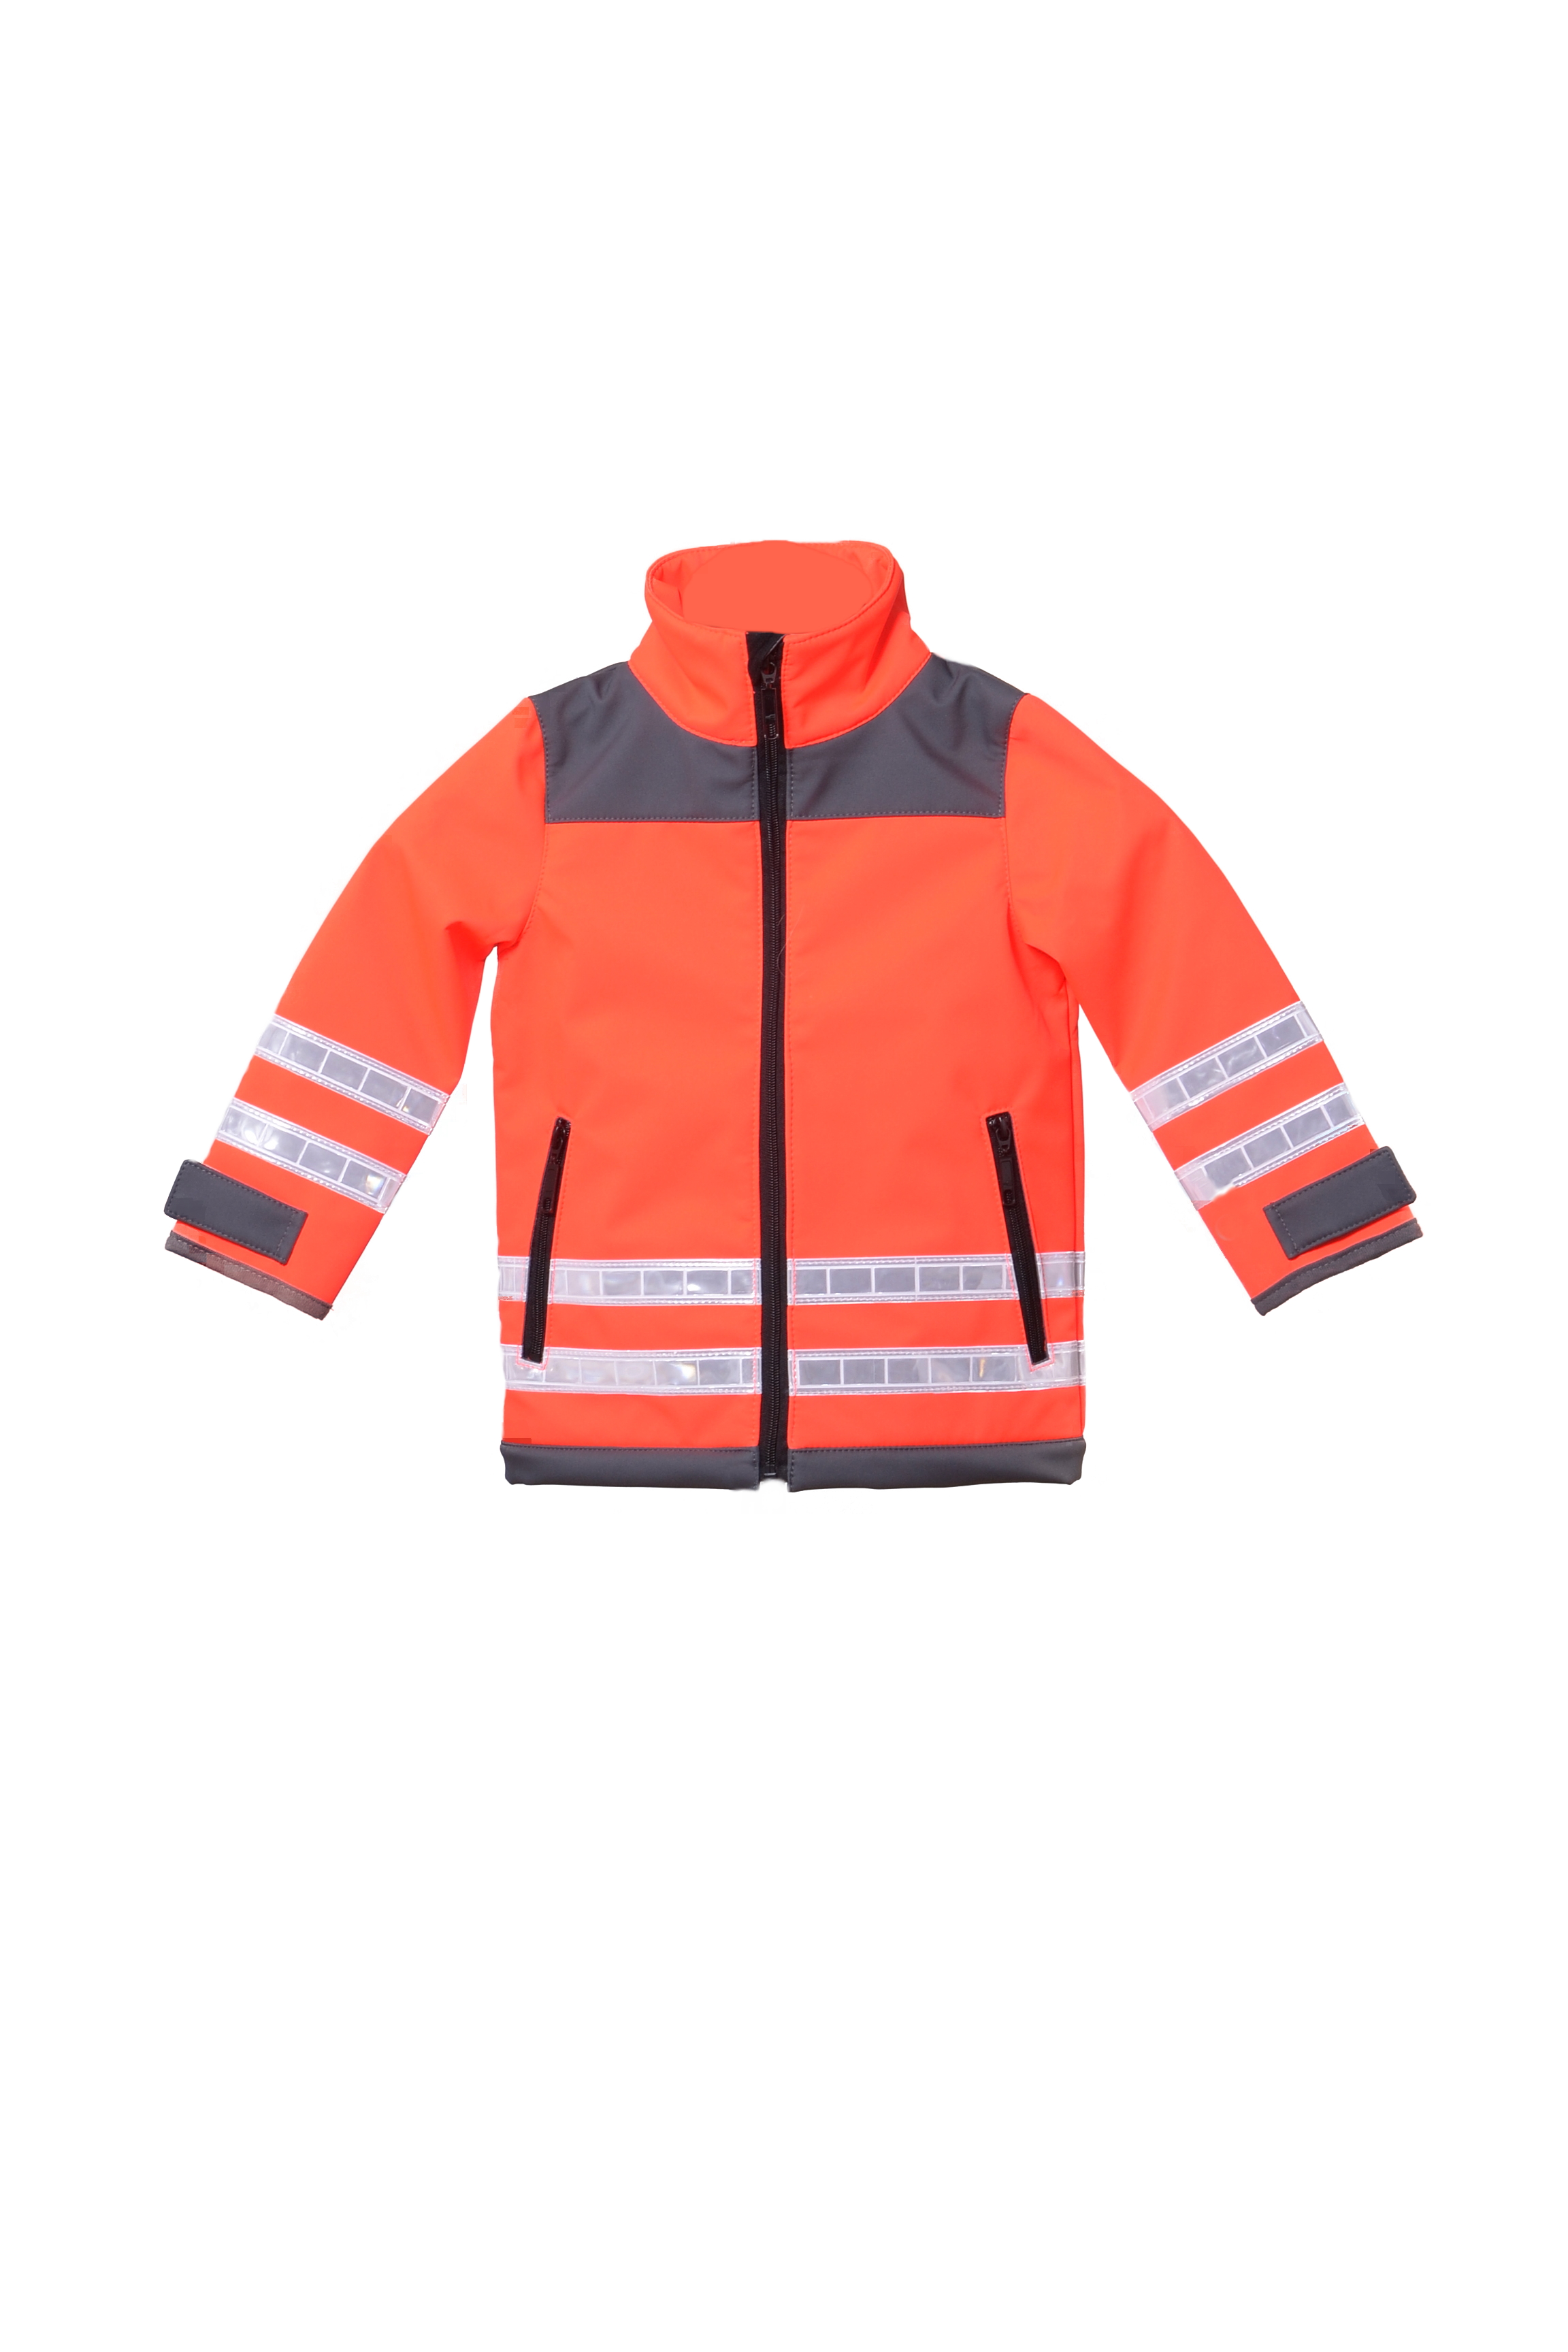 Hortig-Vertrieb - Der Spezialist für Rettungsdienst Kinder, - Softshelljacke Softshell-Jacke den für DRK-Softshelljacke, Kindersoftshelljacke, leuchtrot/grau